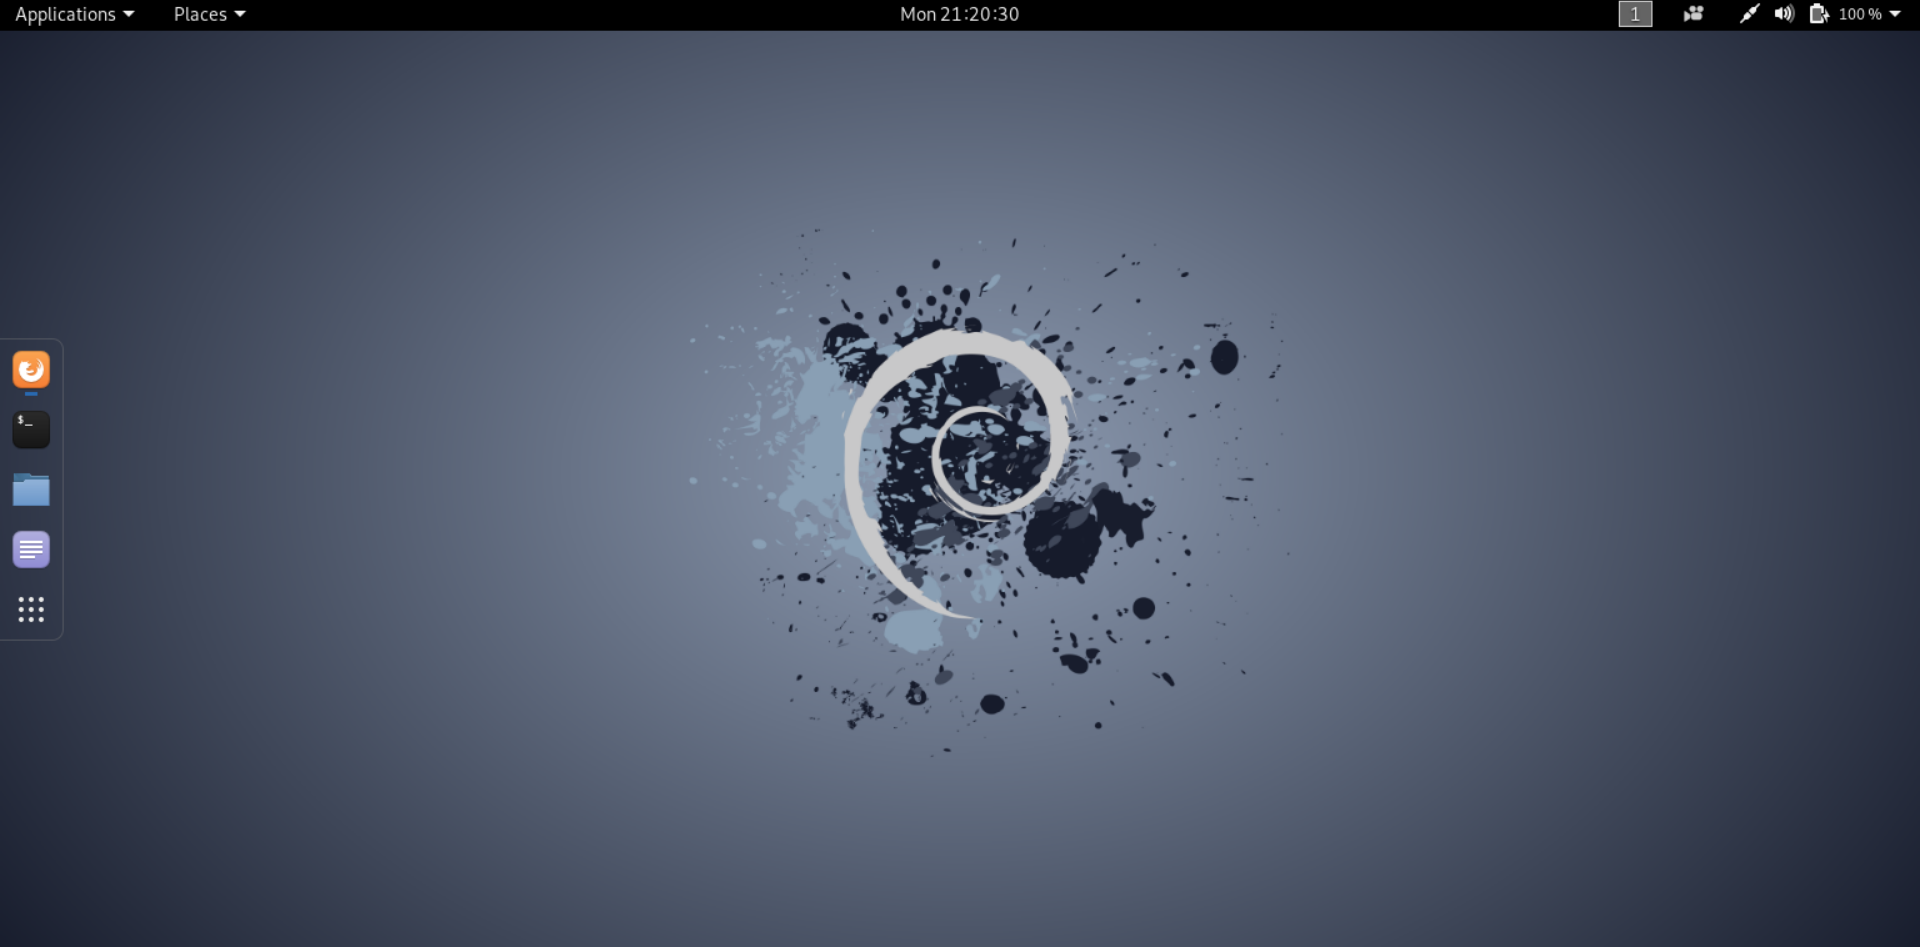 My Desktop - Kali Linux Debian Desktop - 1920x947 Wallpaper 